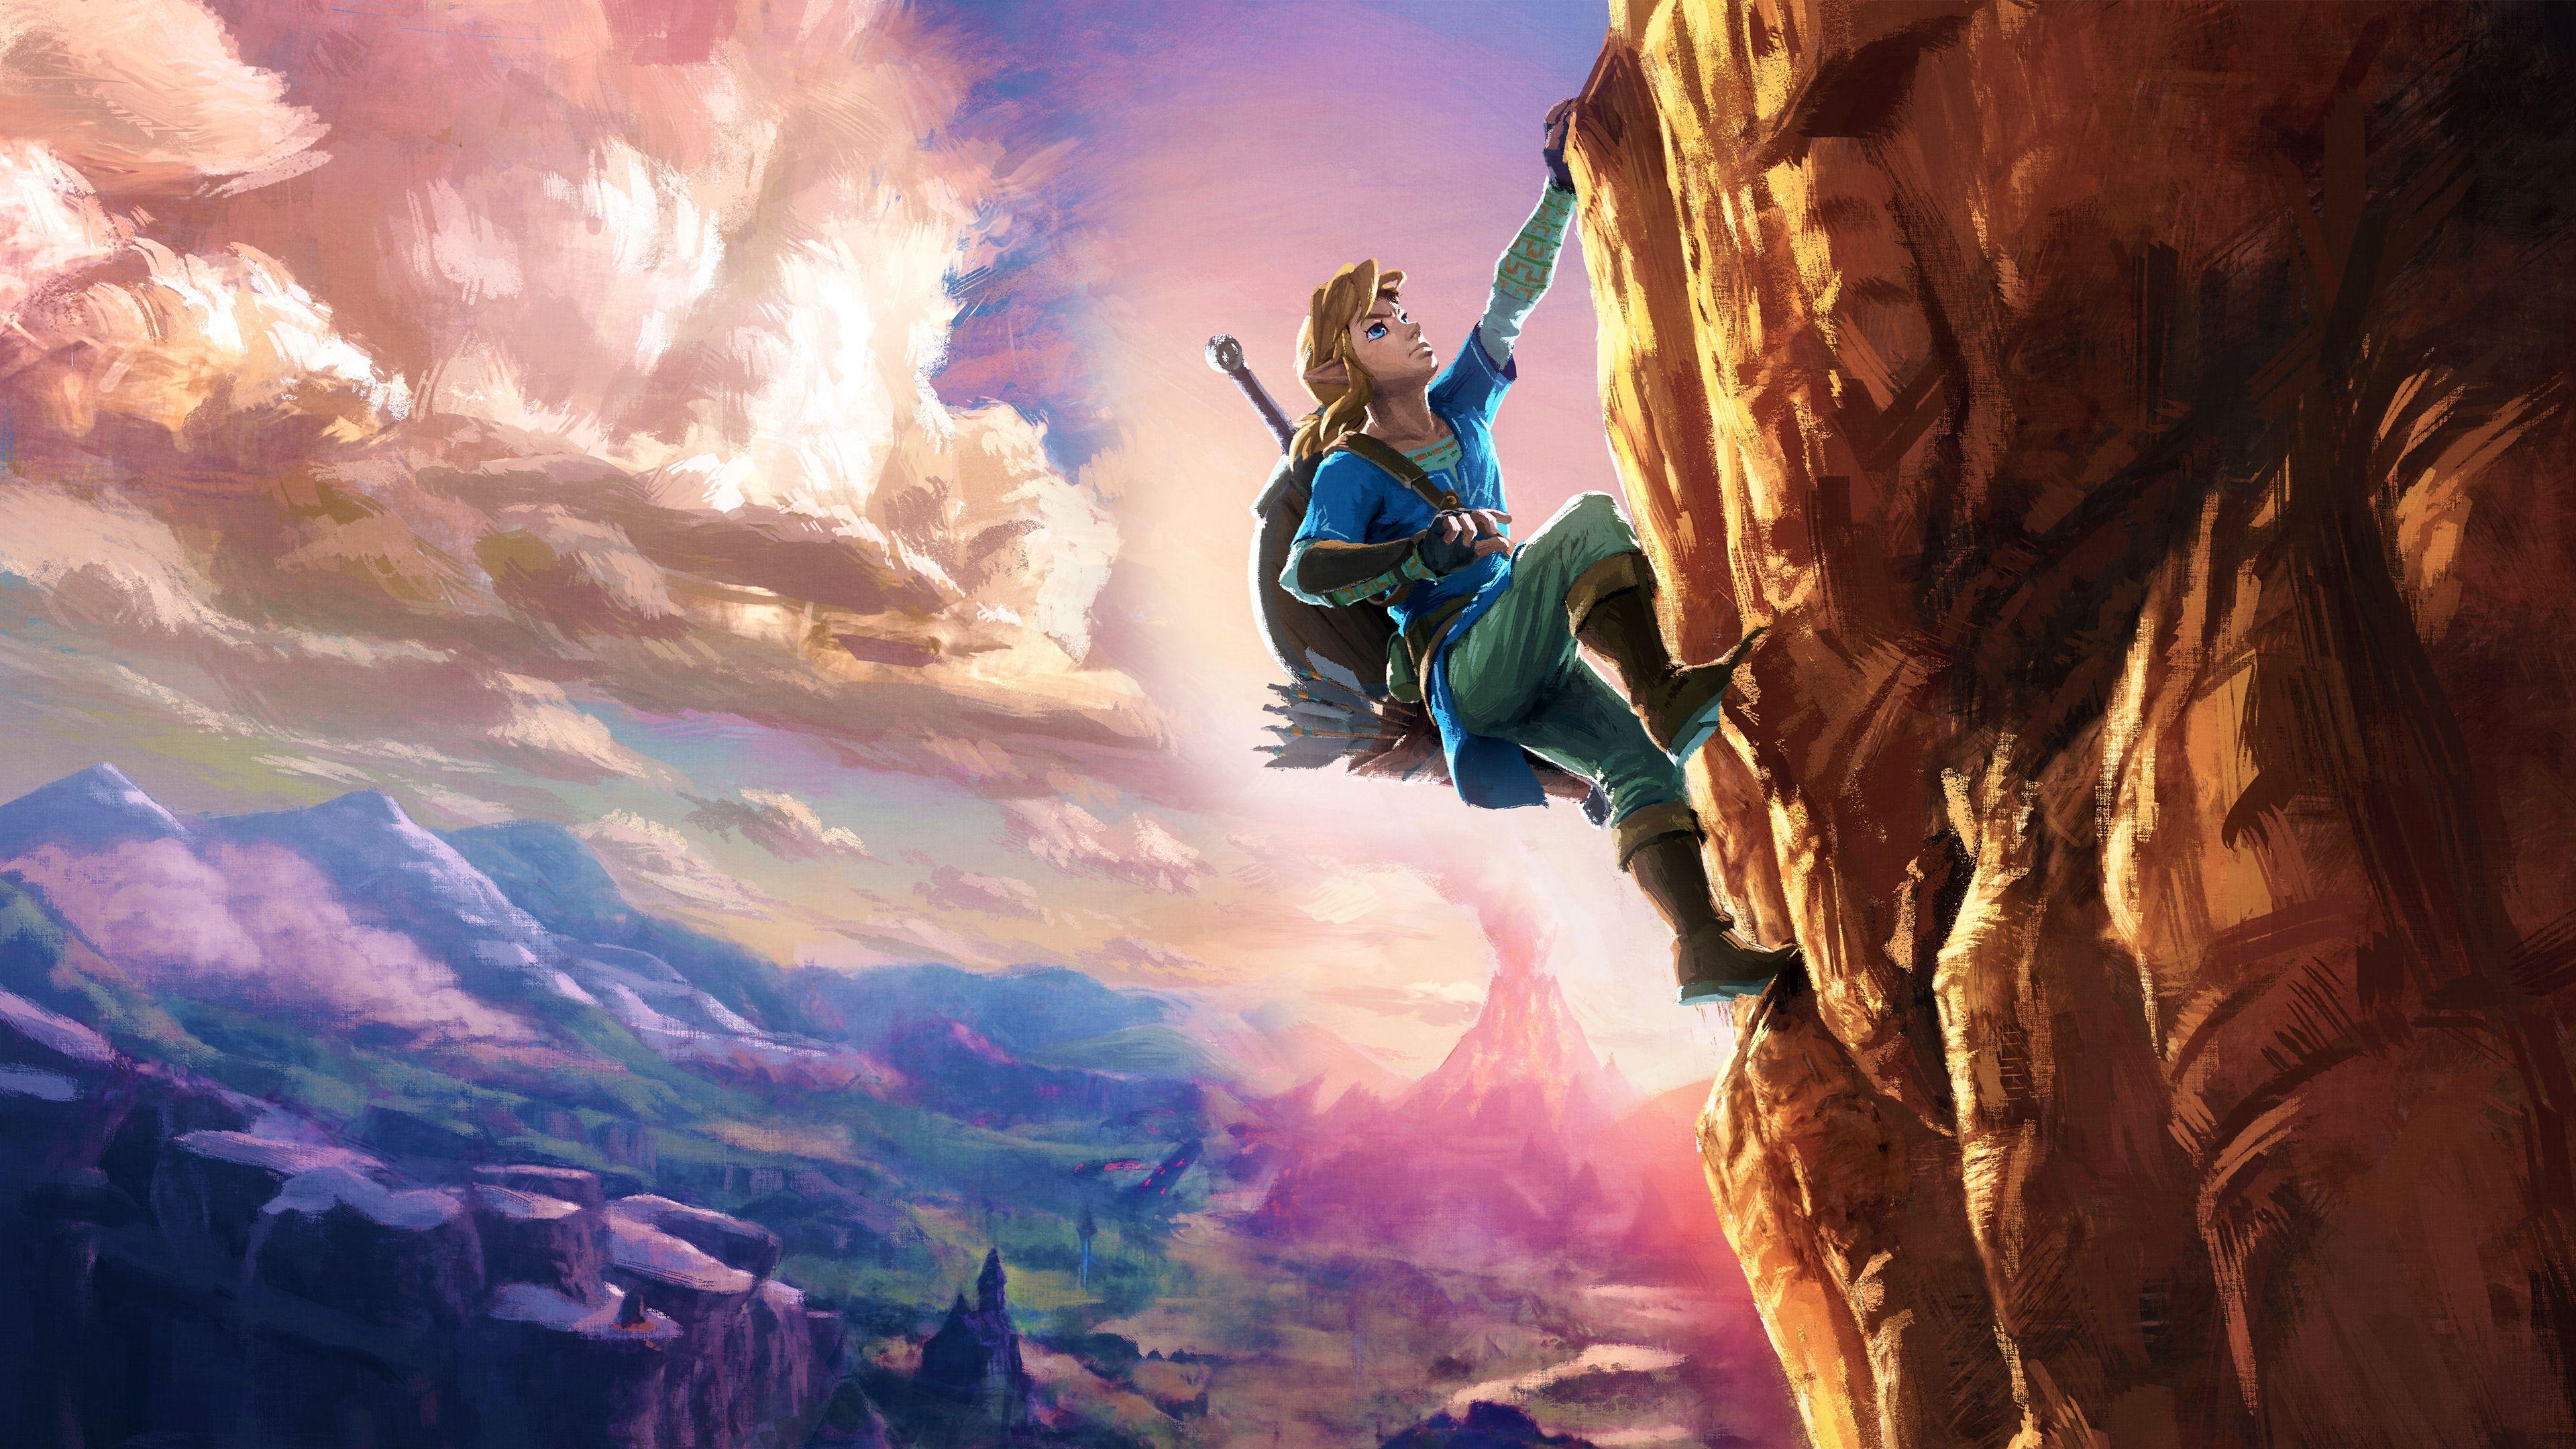 Zelda 4k Wallpapers - Top Free Zelda 4k Backgrounds - WallpaperAccess